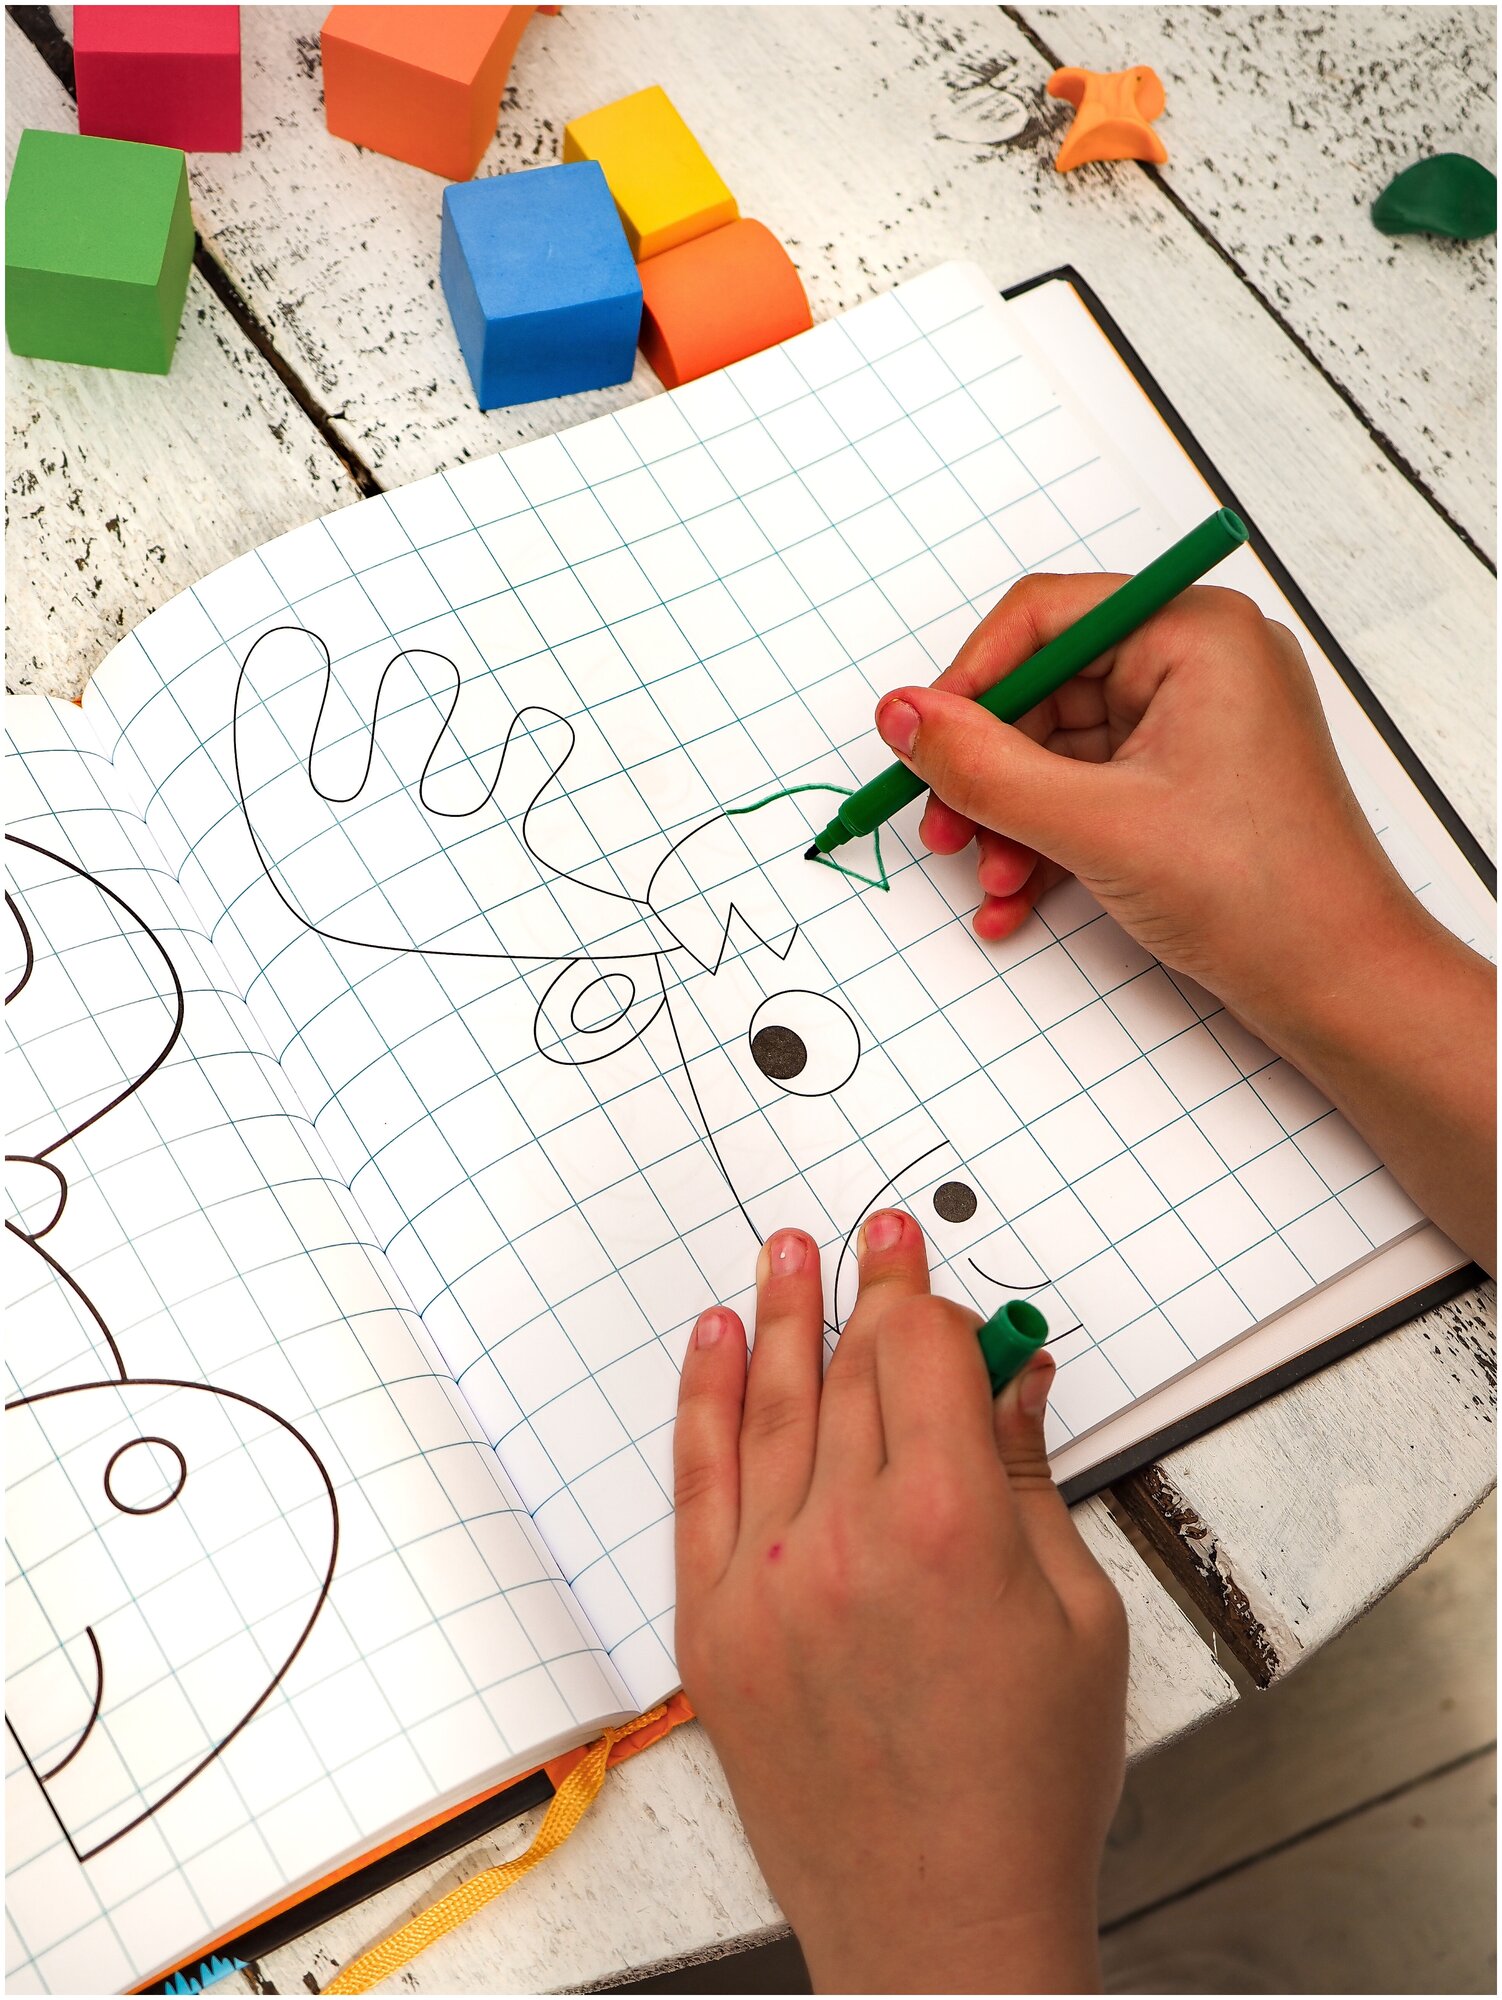 Cкорописание. Как научить ребенка писать быстро и красиво. Книга-тренинг - фото №16